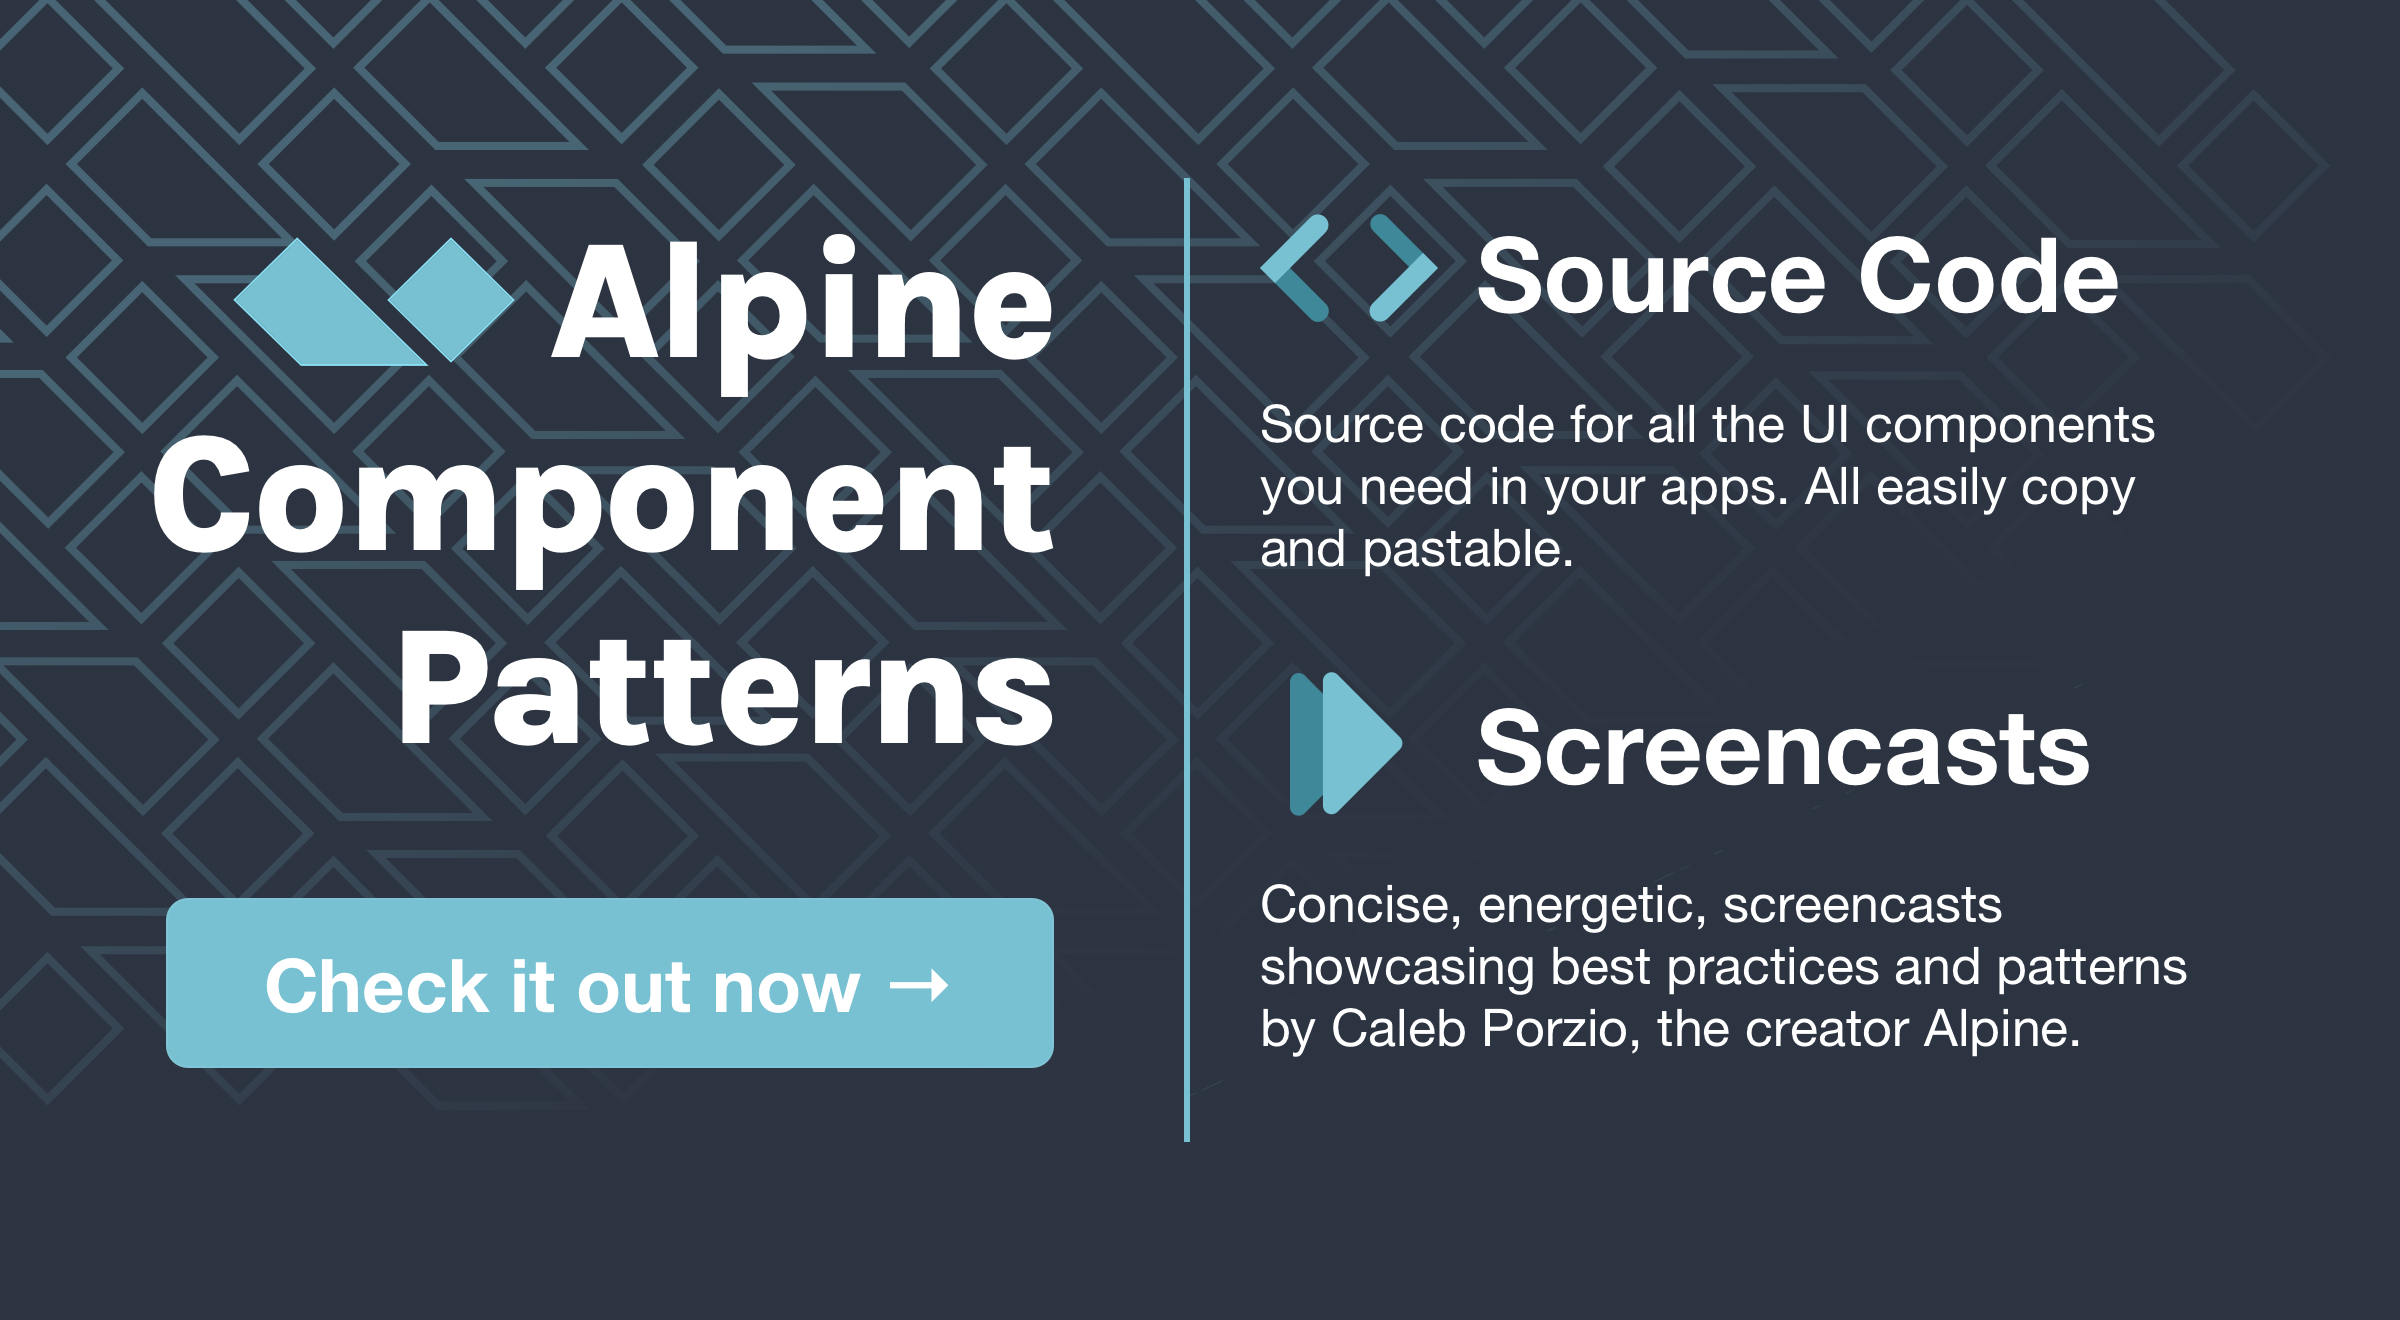 Alpine Component Patterns